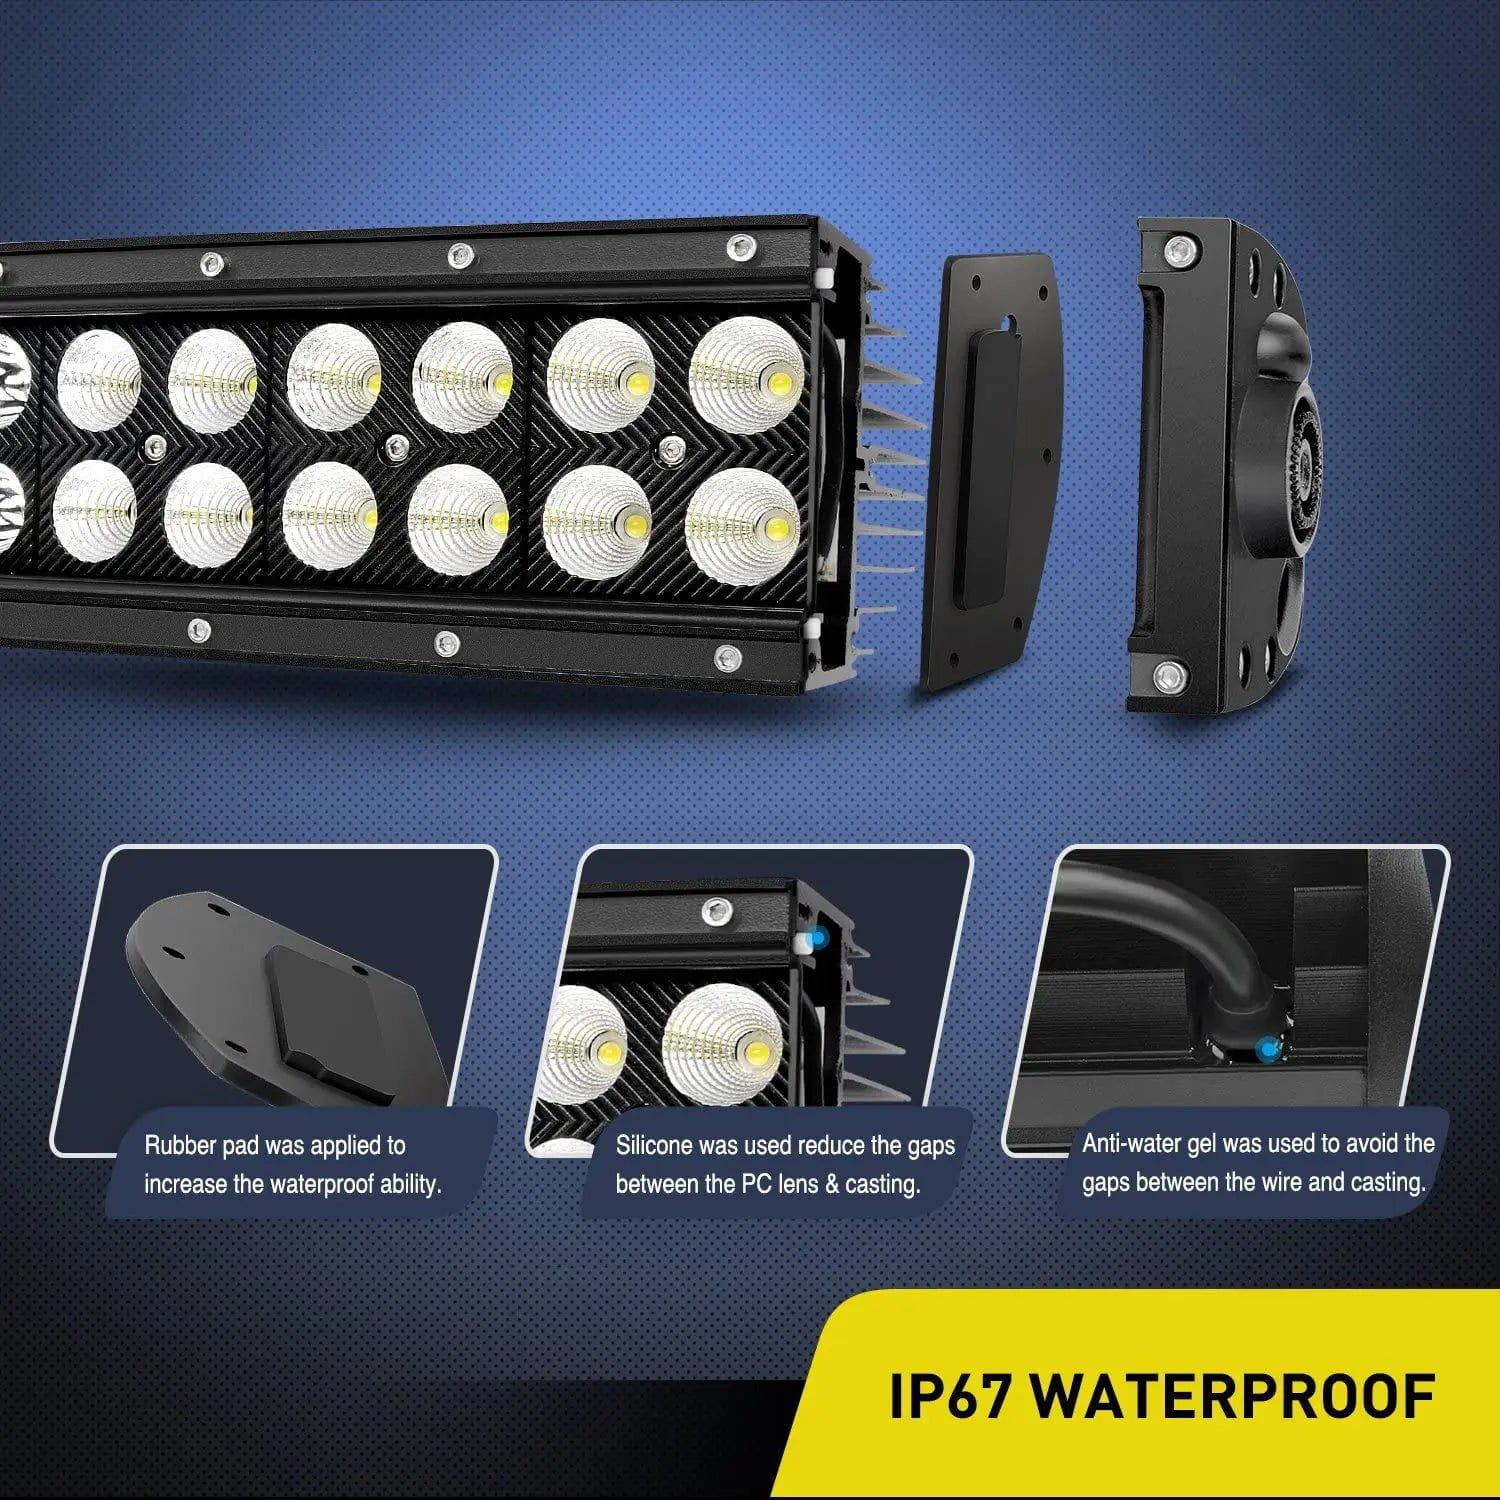 LED Light Bar 32" 180W Double Row Black Curved Spot/Flood LED Light Bar